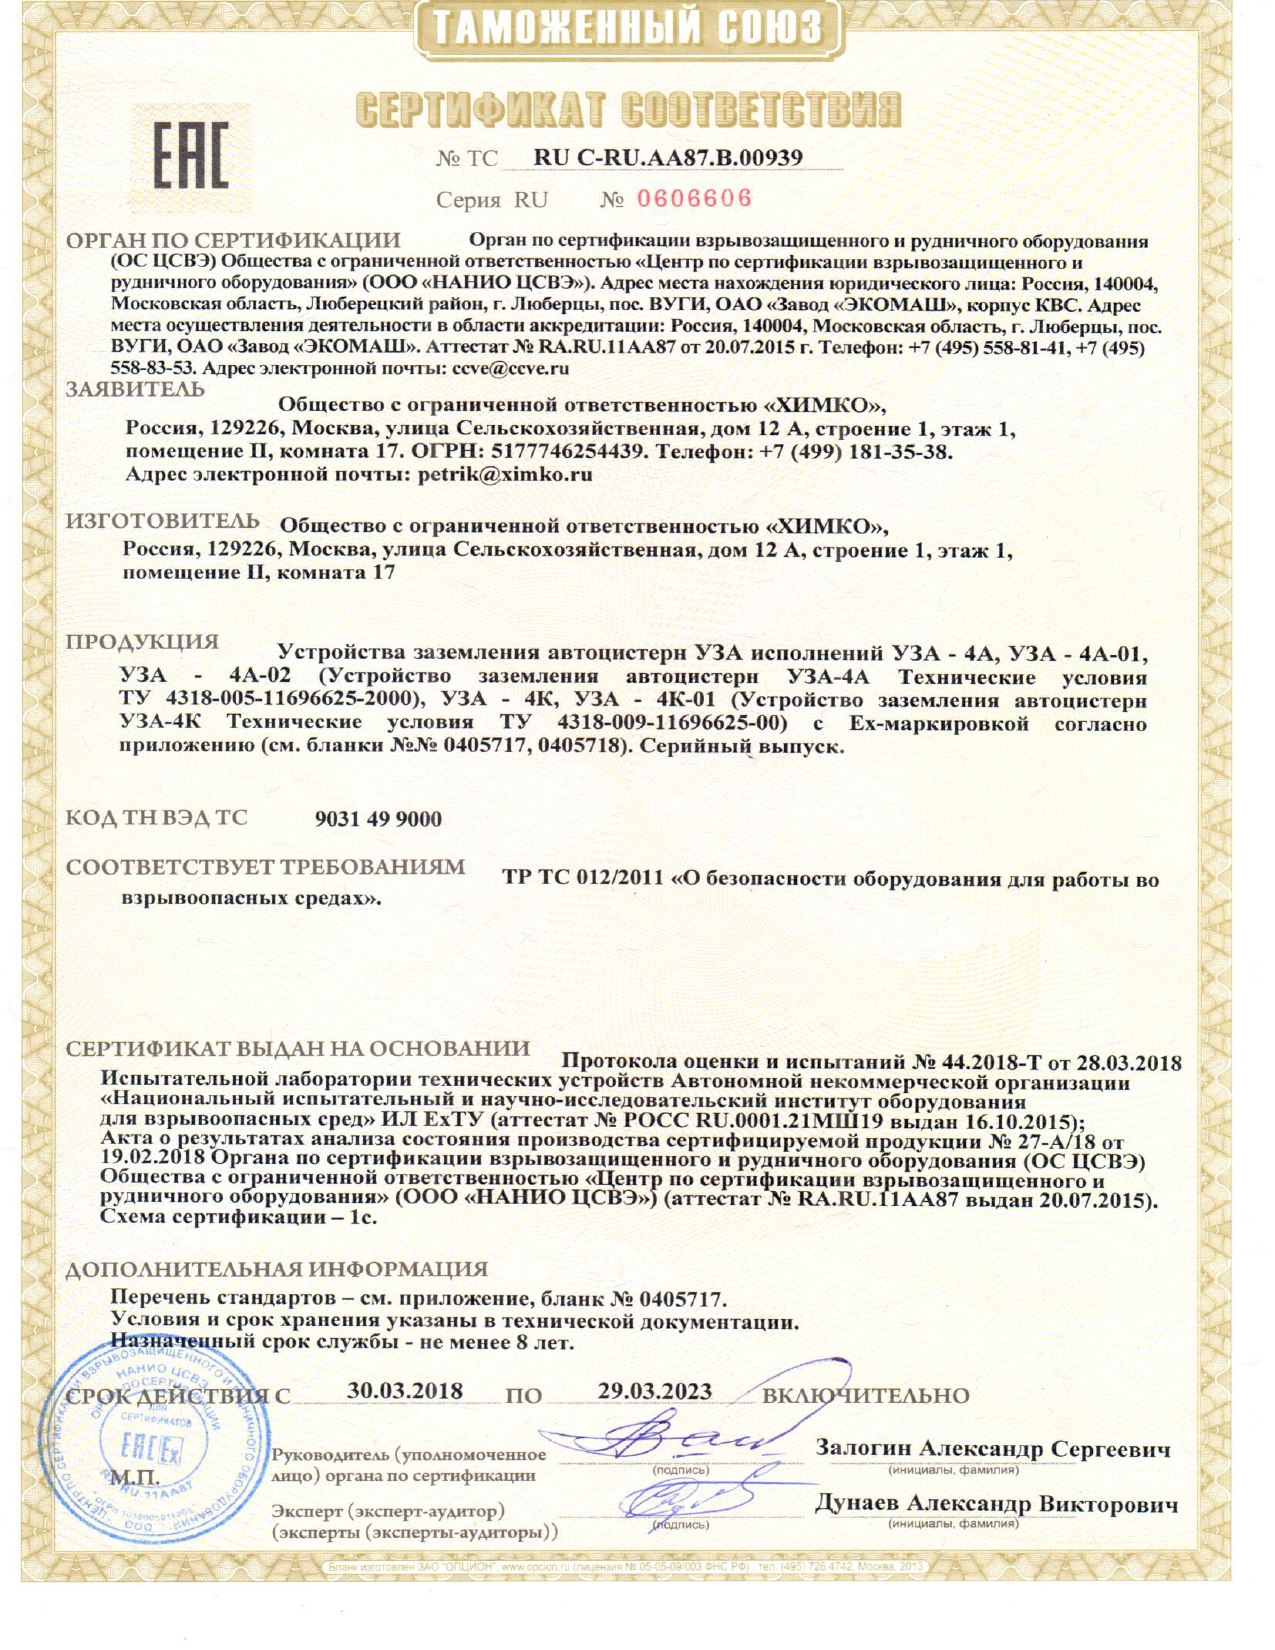 Сертификат соответствия ТС на УЗА-4К, УЗА-4А